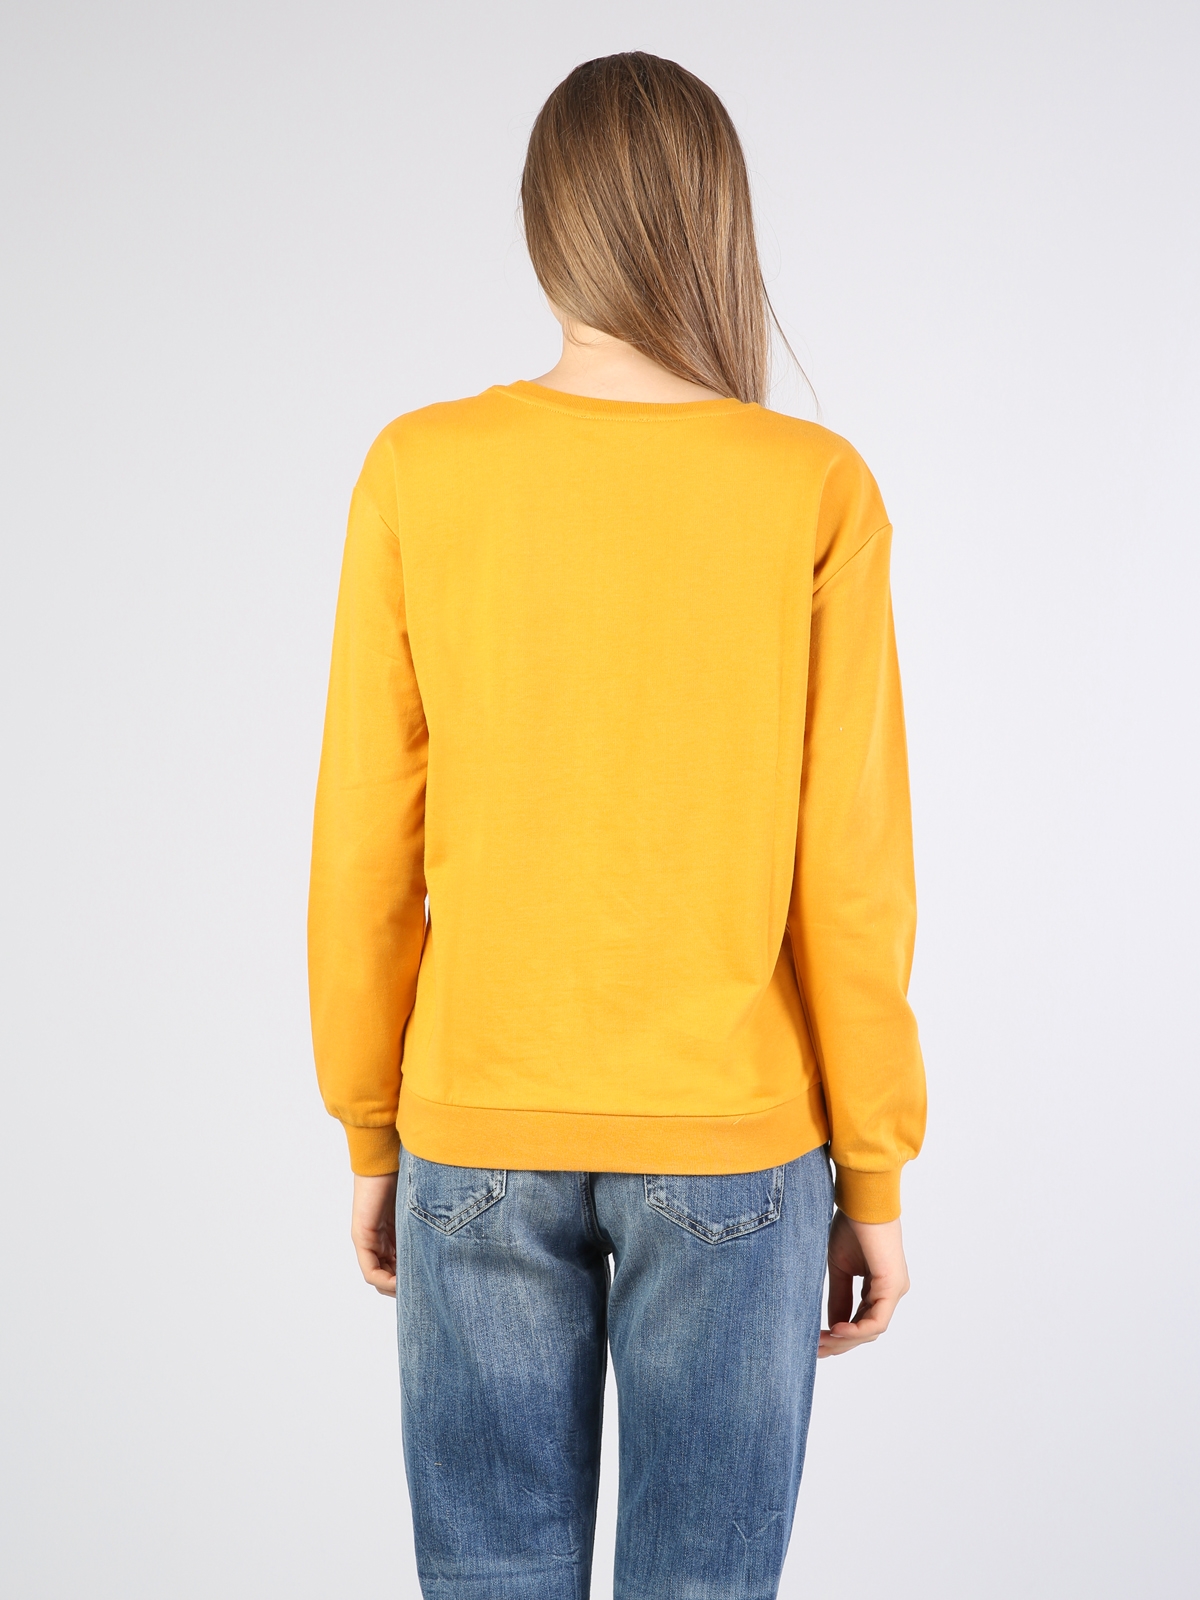 Sarı Baskılı Uzun Kol Sweatshirt